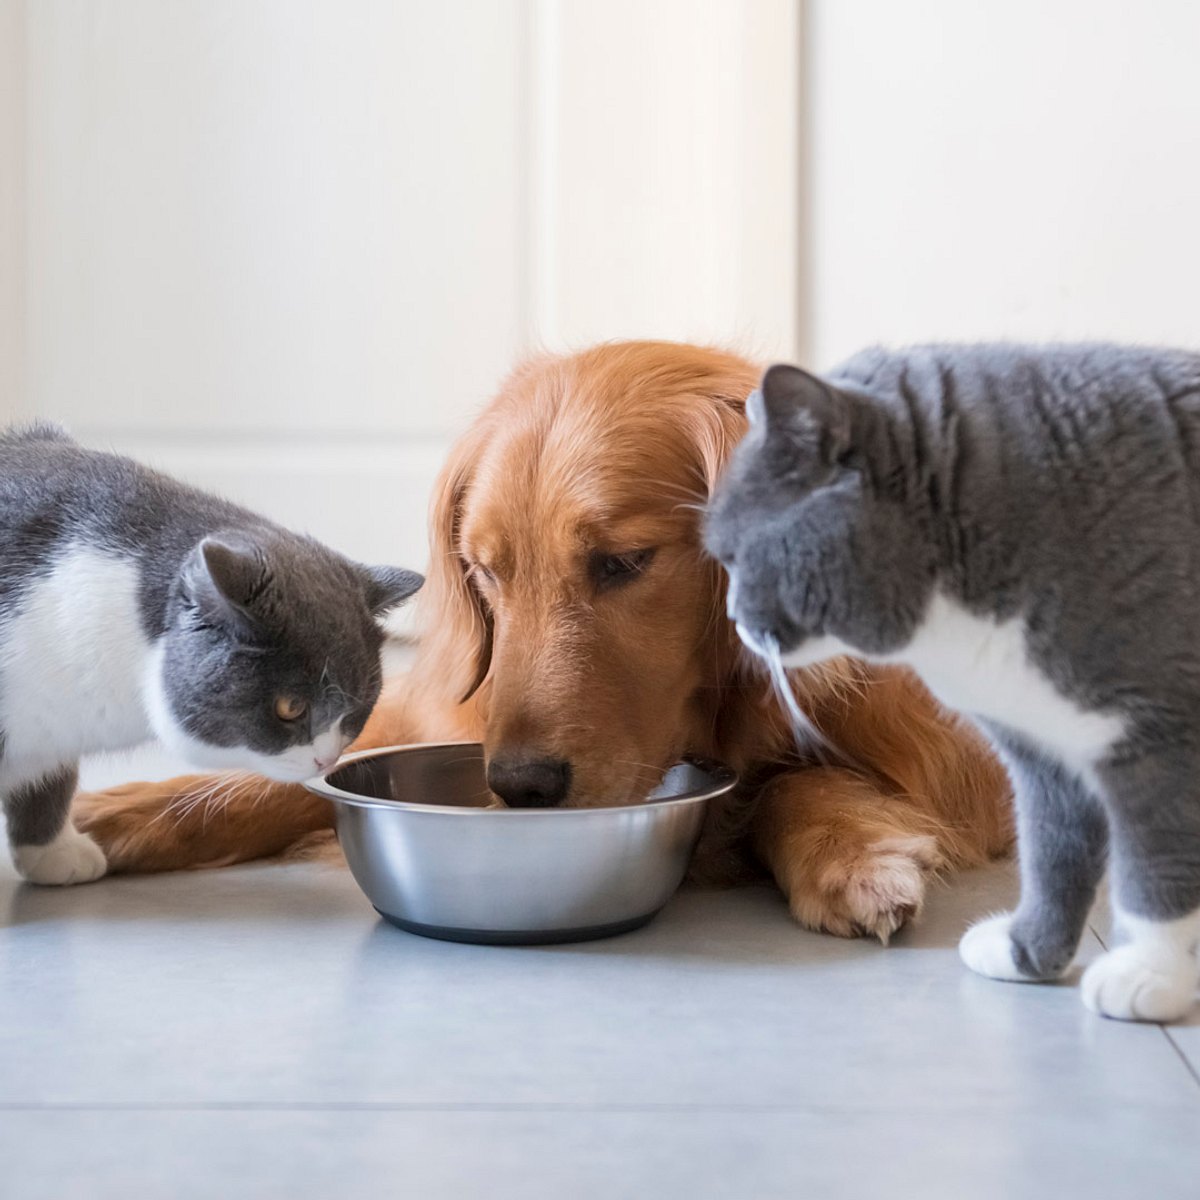 Hunde und Katzen: Insekten füttern statt Fleisch